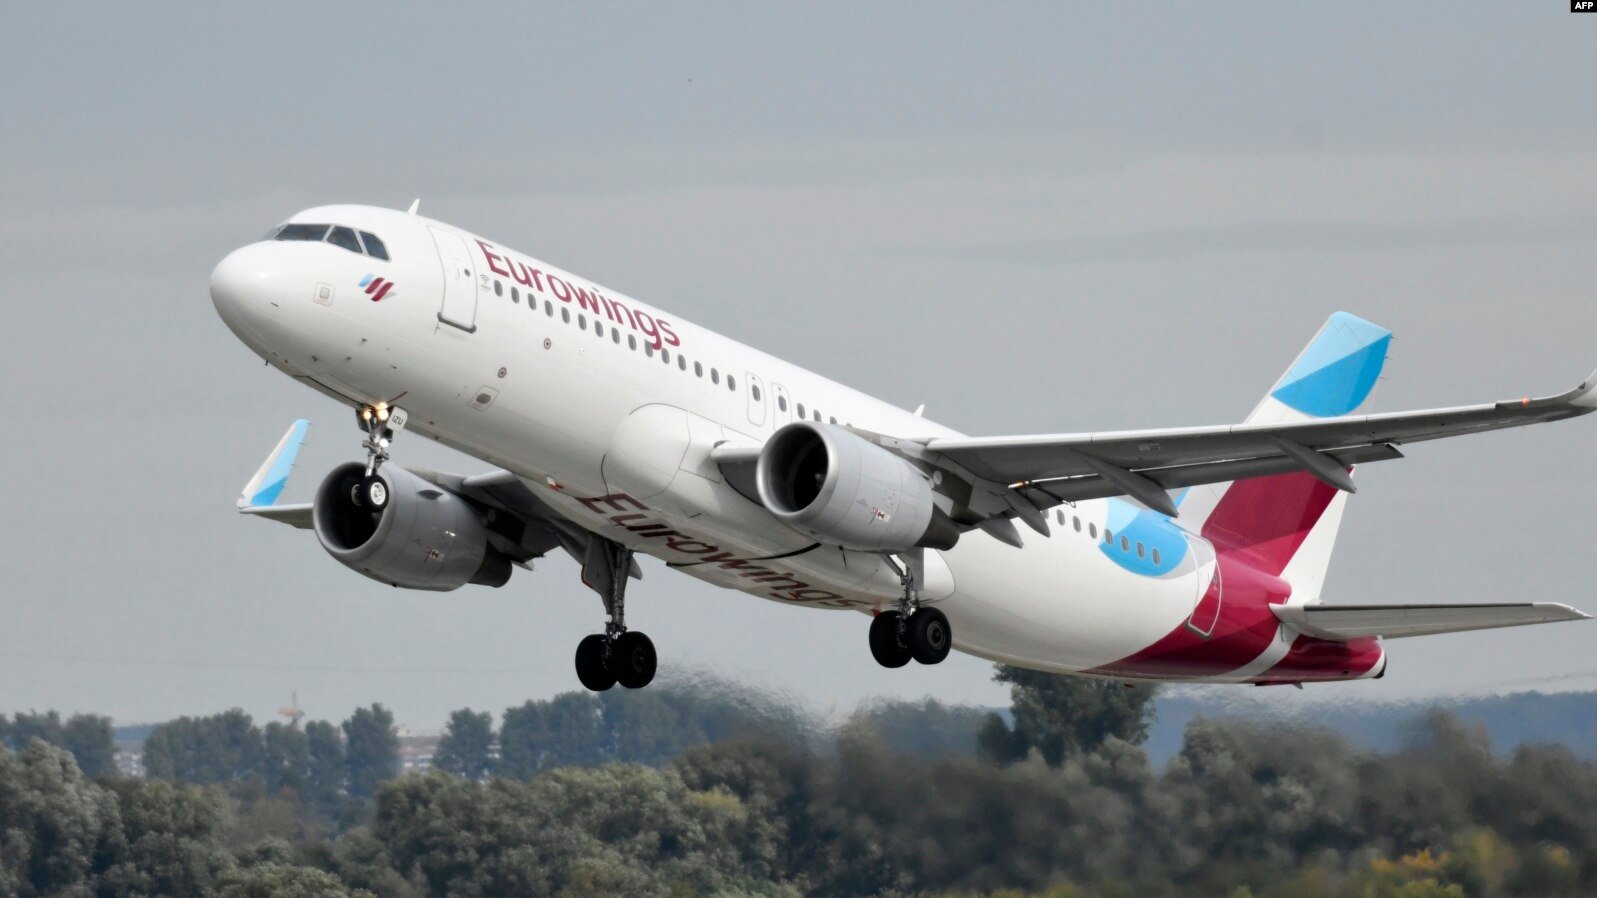 Գերմանական Eurowings ավիաընկերությունը մուտք է գործում վրացական ավիացիոն շուկա